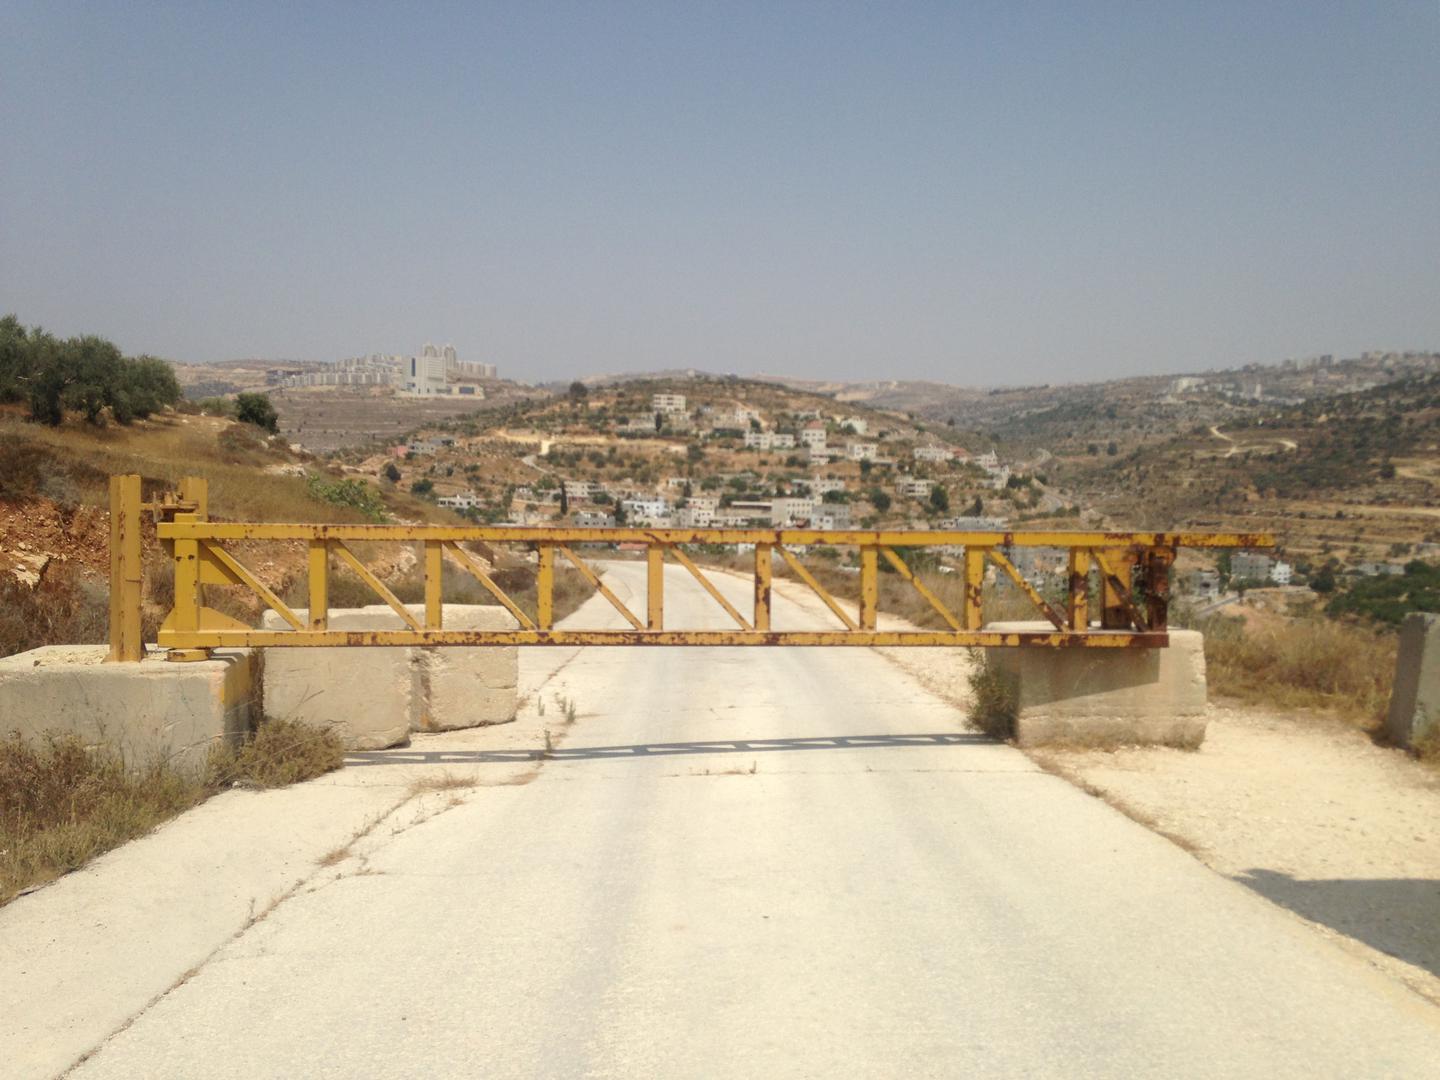 Un barrage routier érigé par une compagnie israélienne sur une route secondaire située à proximité de la colonie de Dolev, en Cisjordanie, empêche les habitants palestiniens du village d'Ein Qinya de continuer sur cette route afin de rejoindre le principa